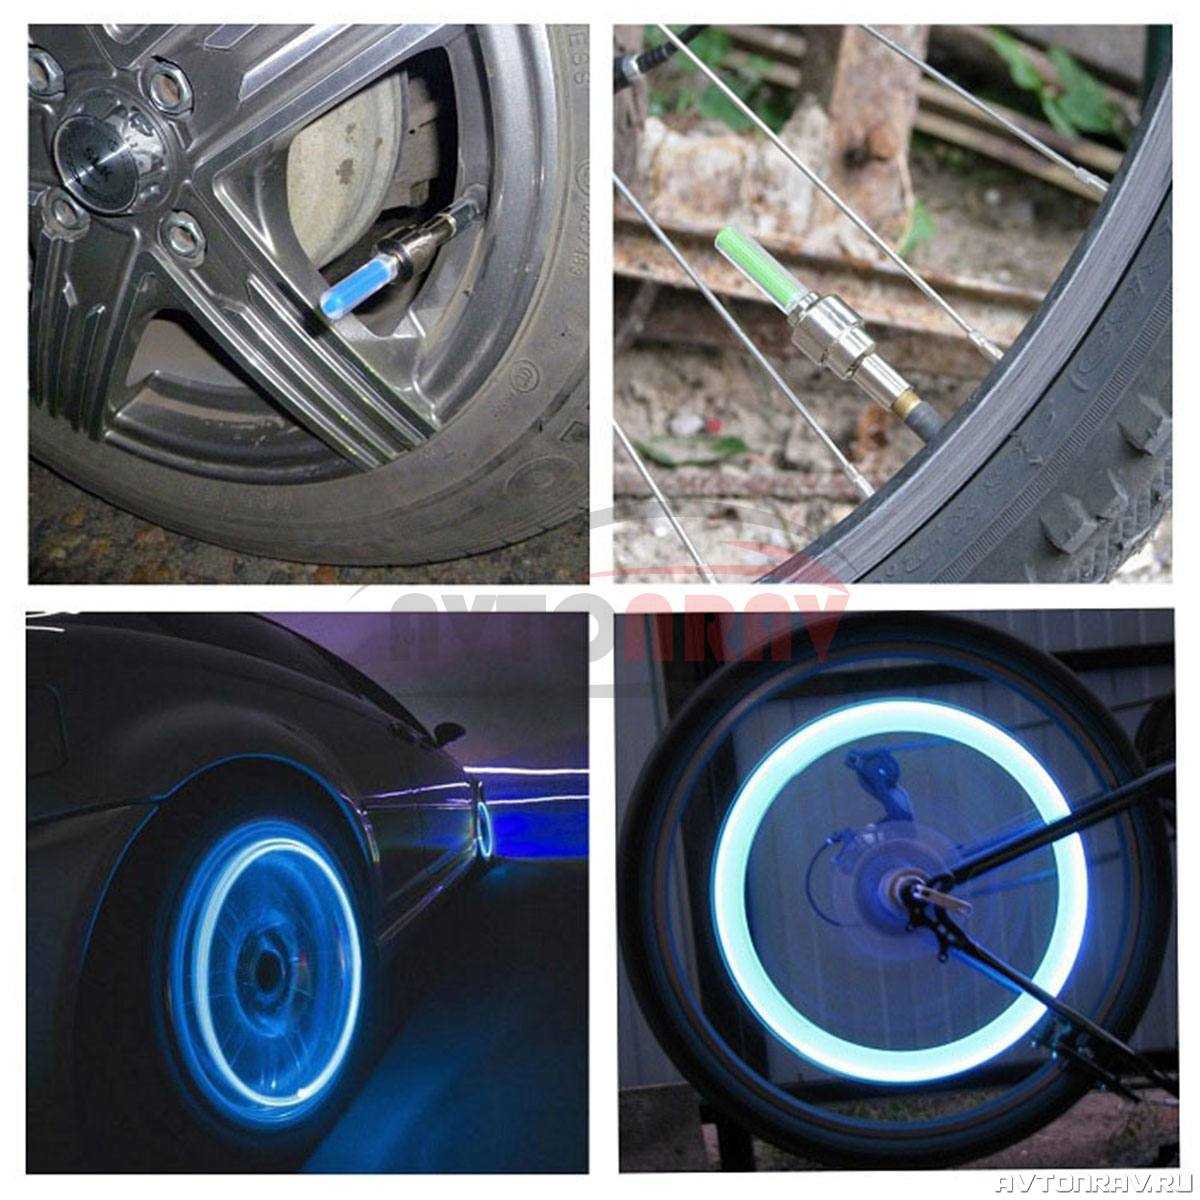 Тюнинг дисков на авто, установка подсветки, авто тюнинг широких колес, колпаков Материалы и инструменты для установки по типу дисков